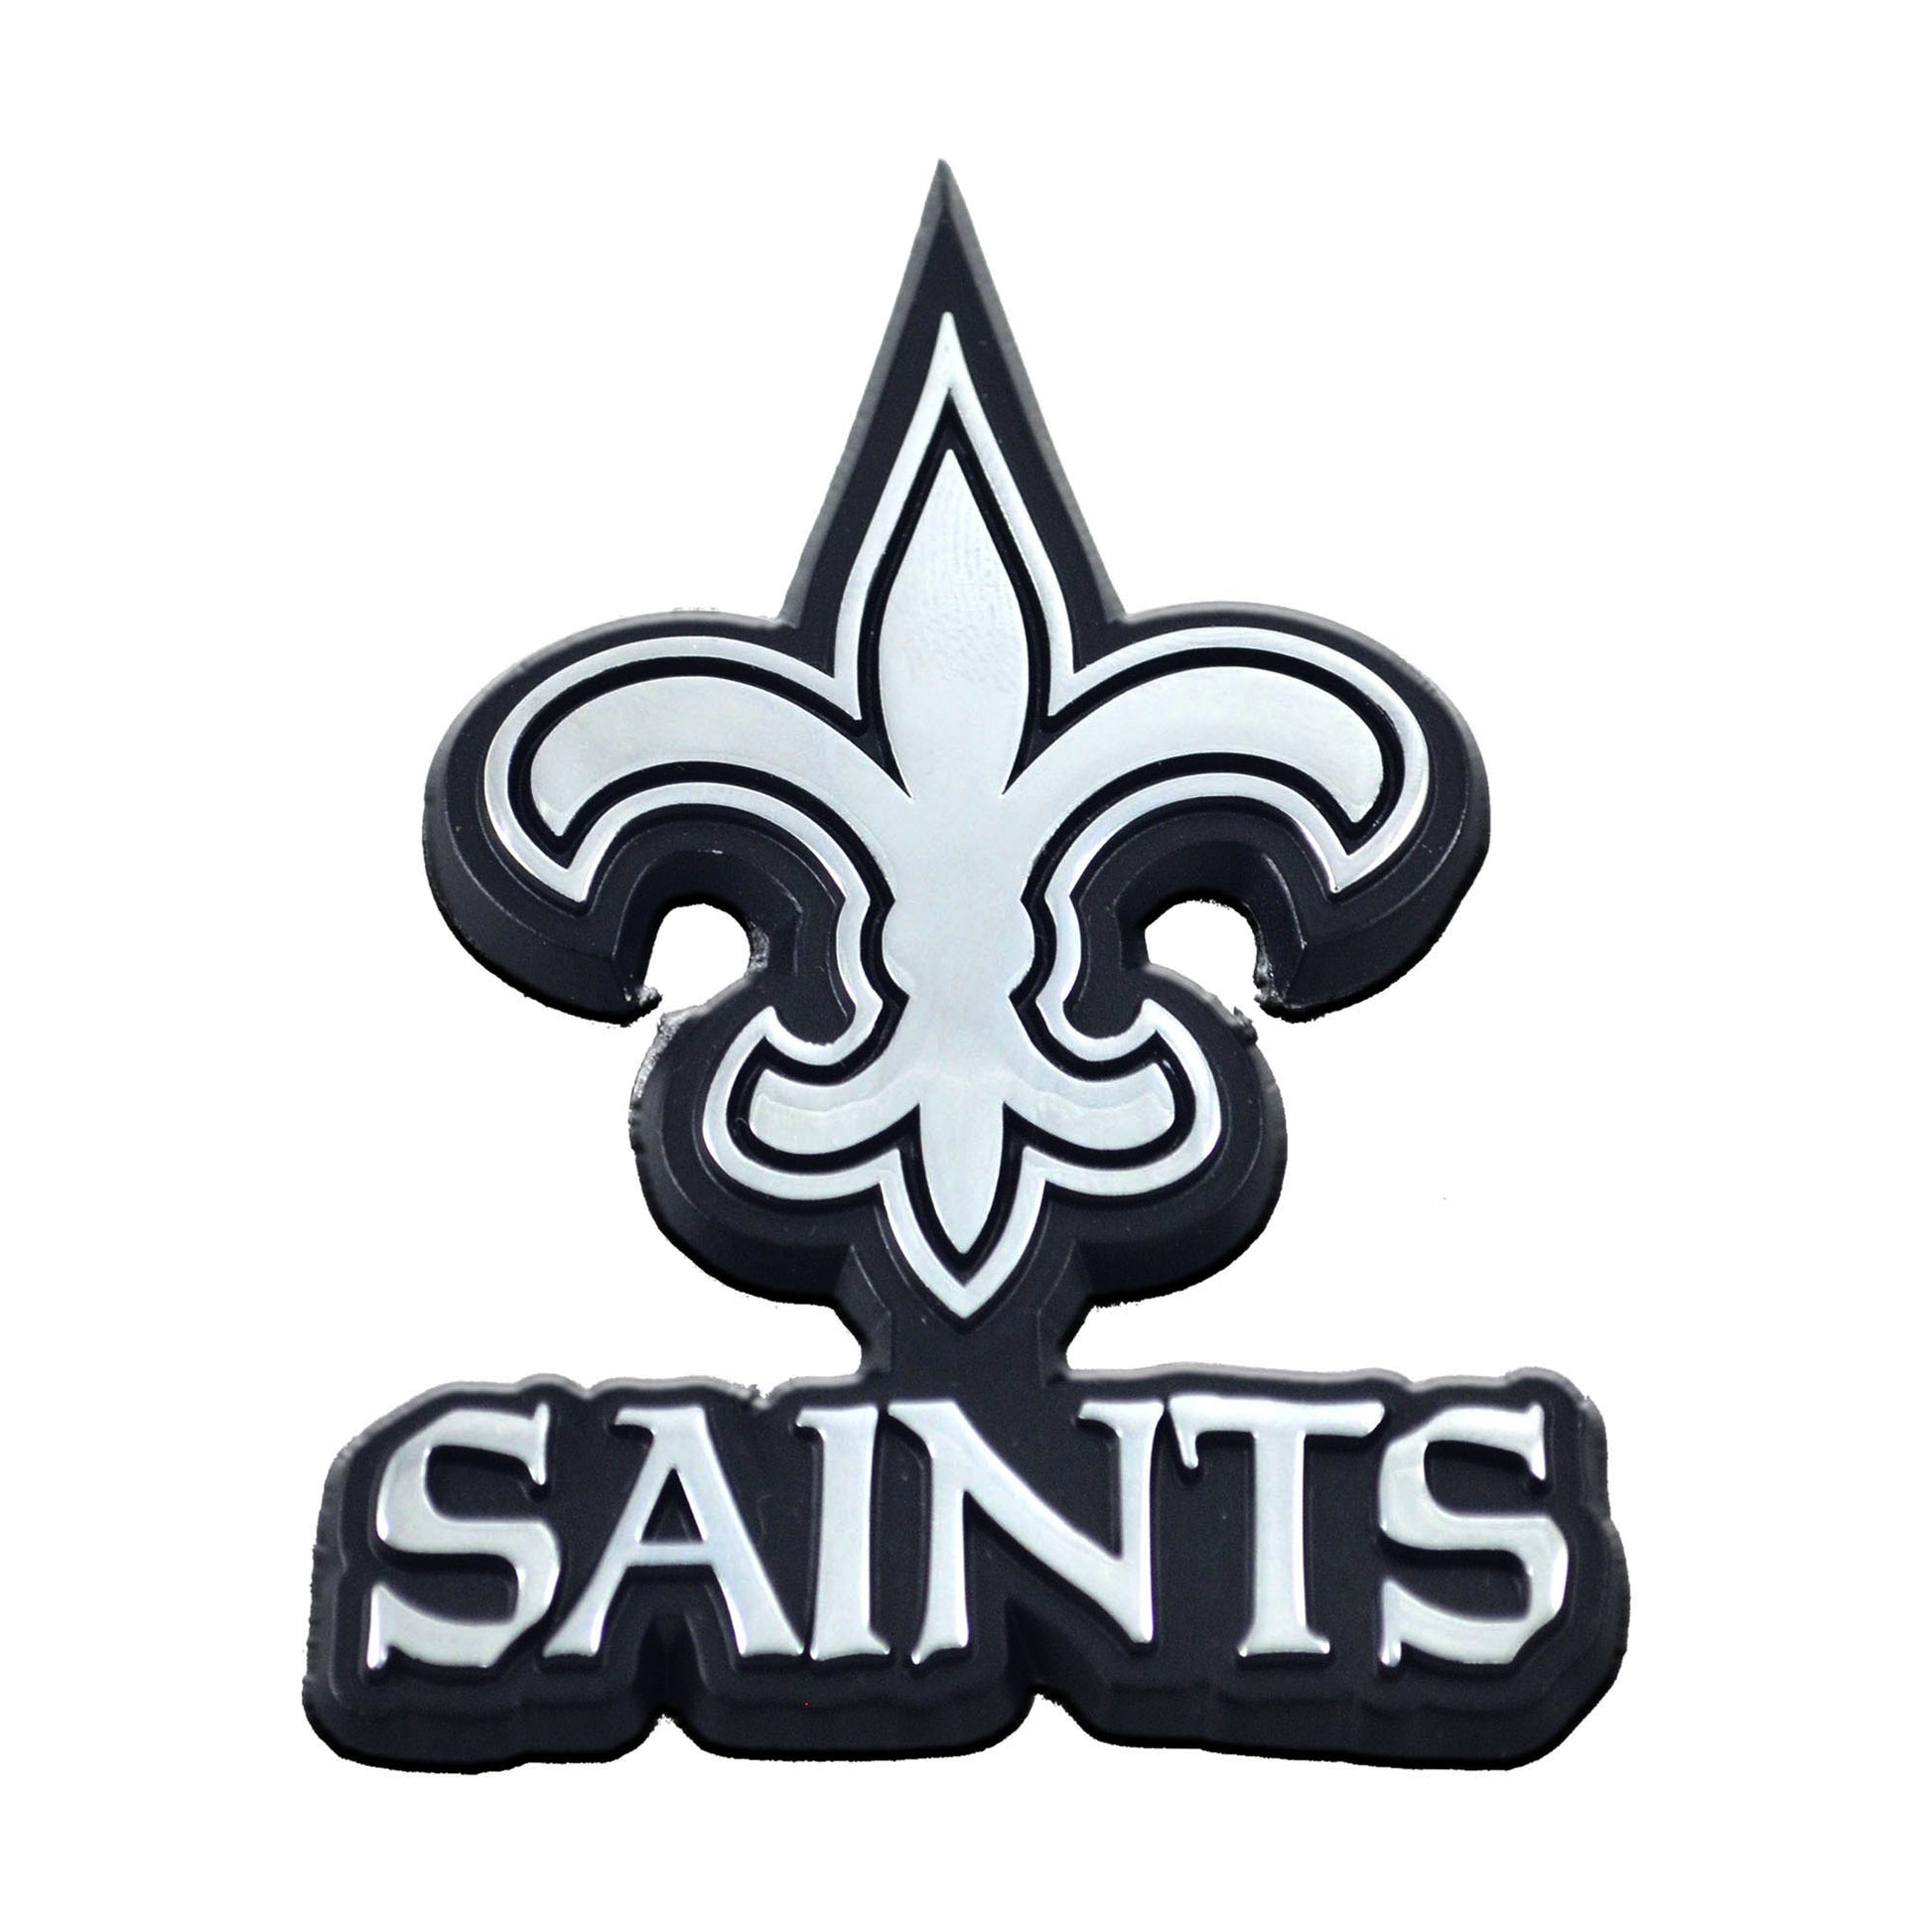 New Orleans Saints Premium Solid Metal Chrome Plated Car Auto Emblem